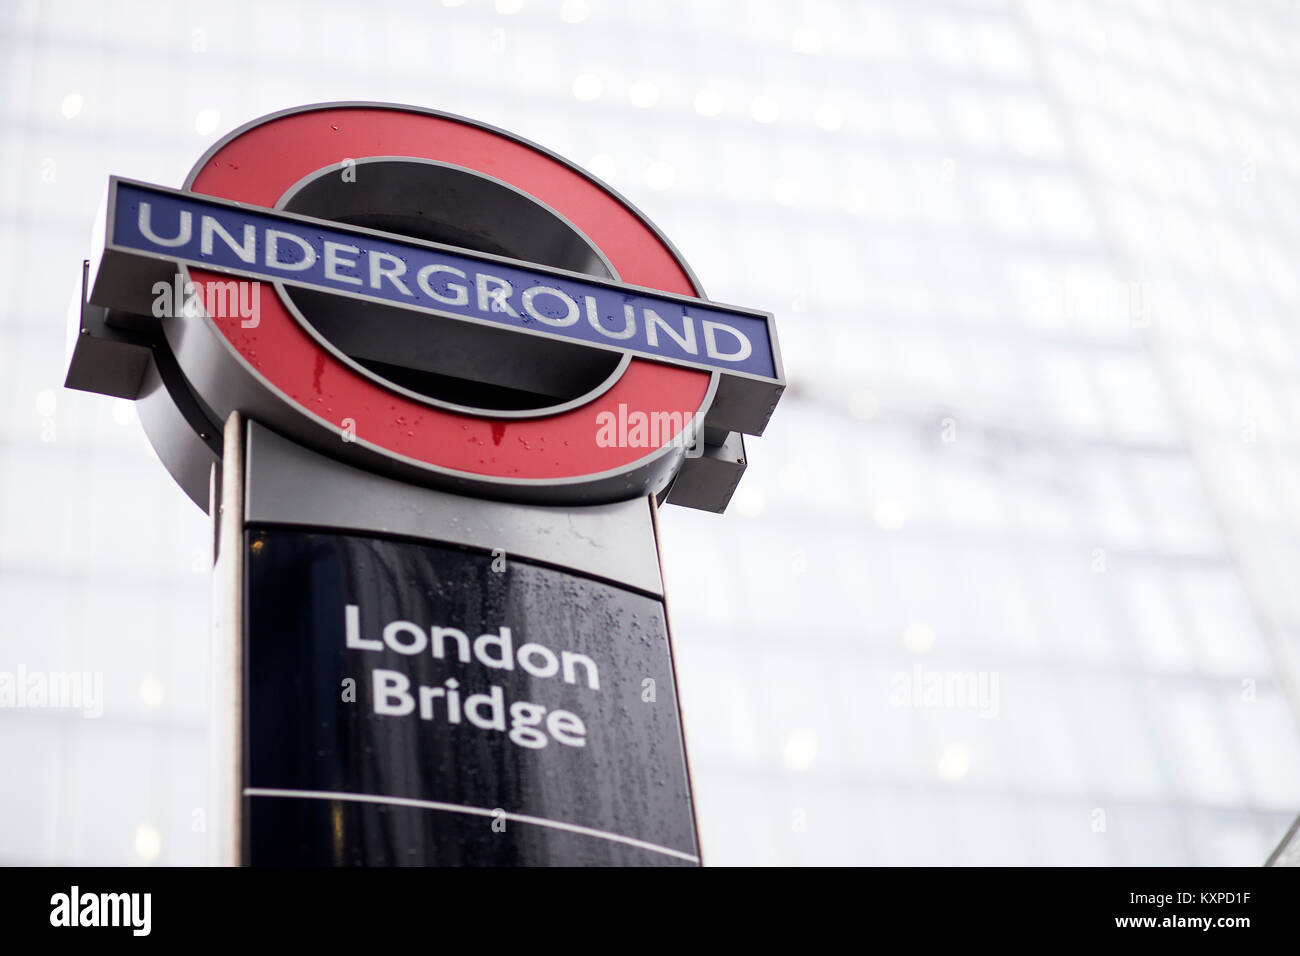 London Bridge Underground station sign outside The Shard, London Stock Photo